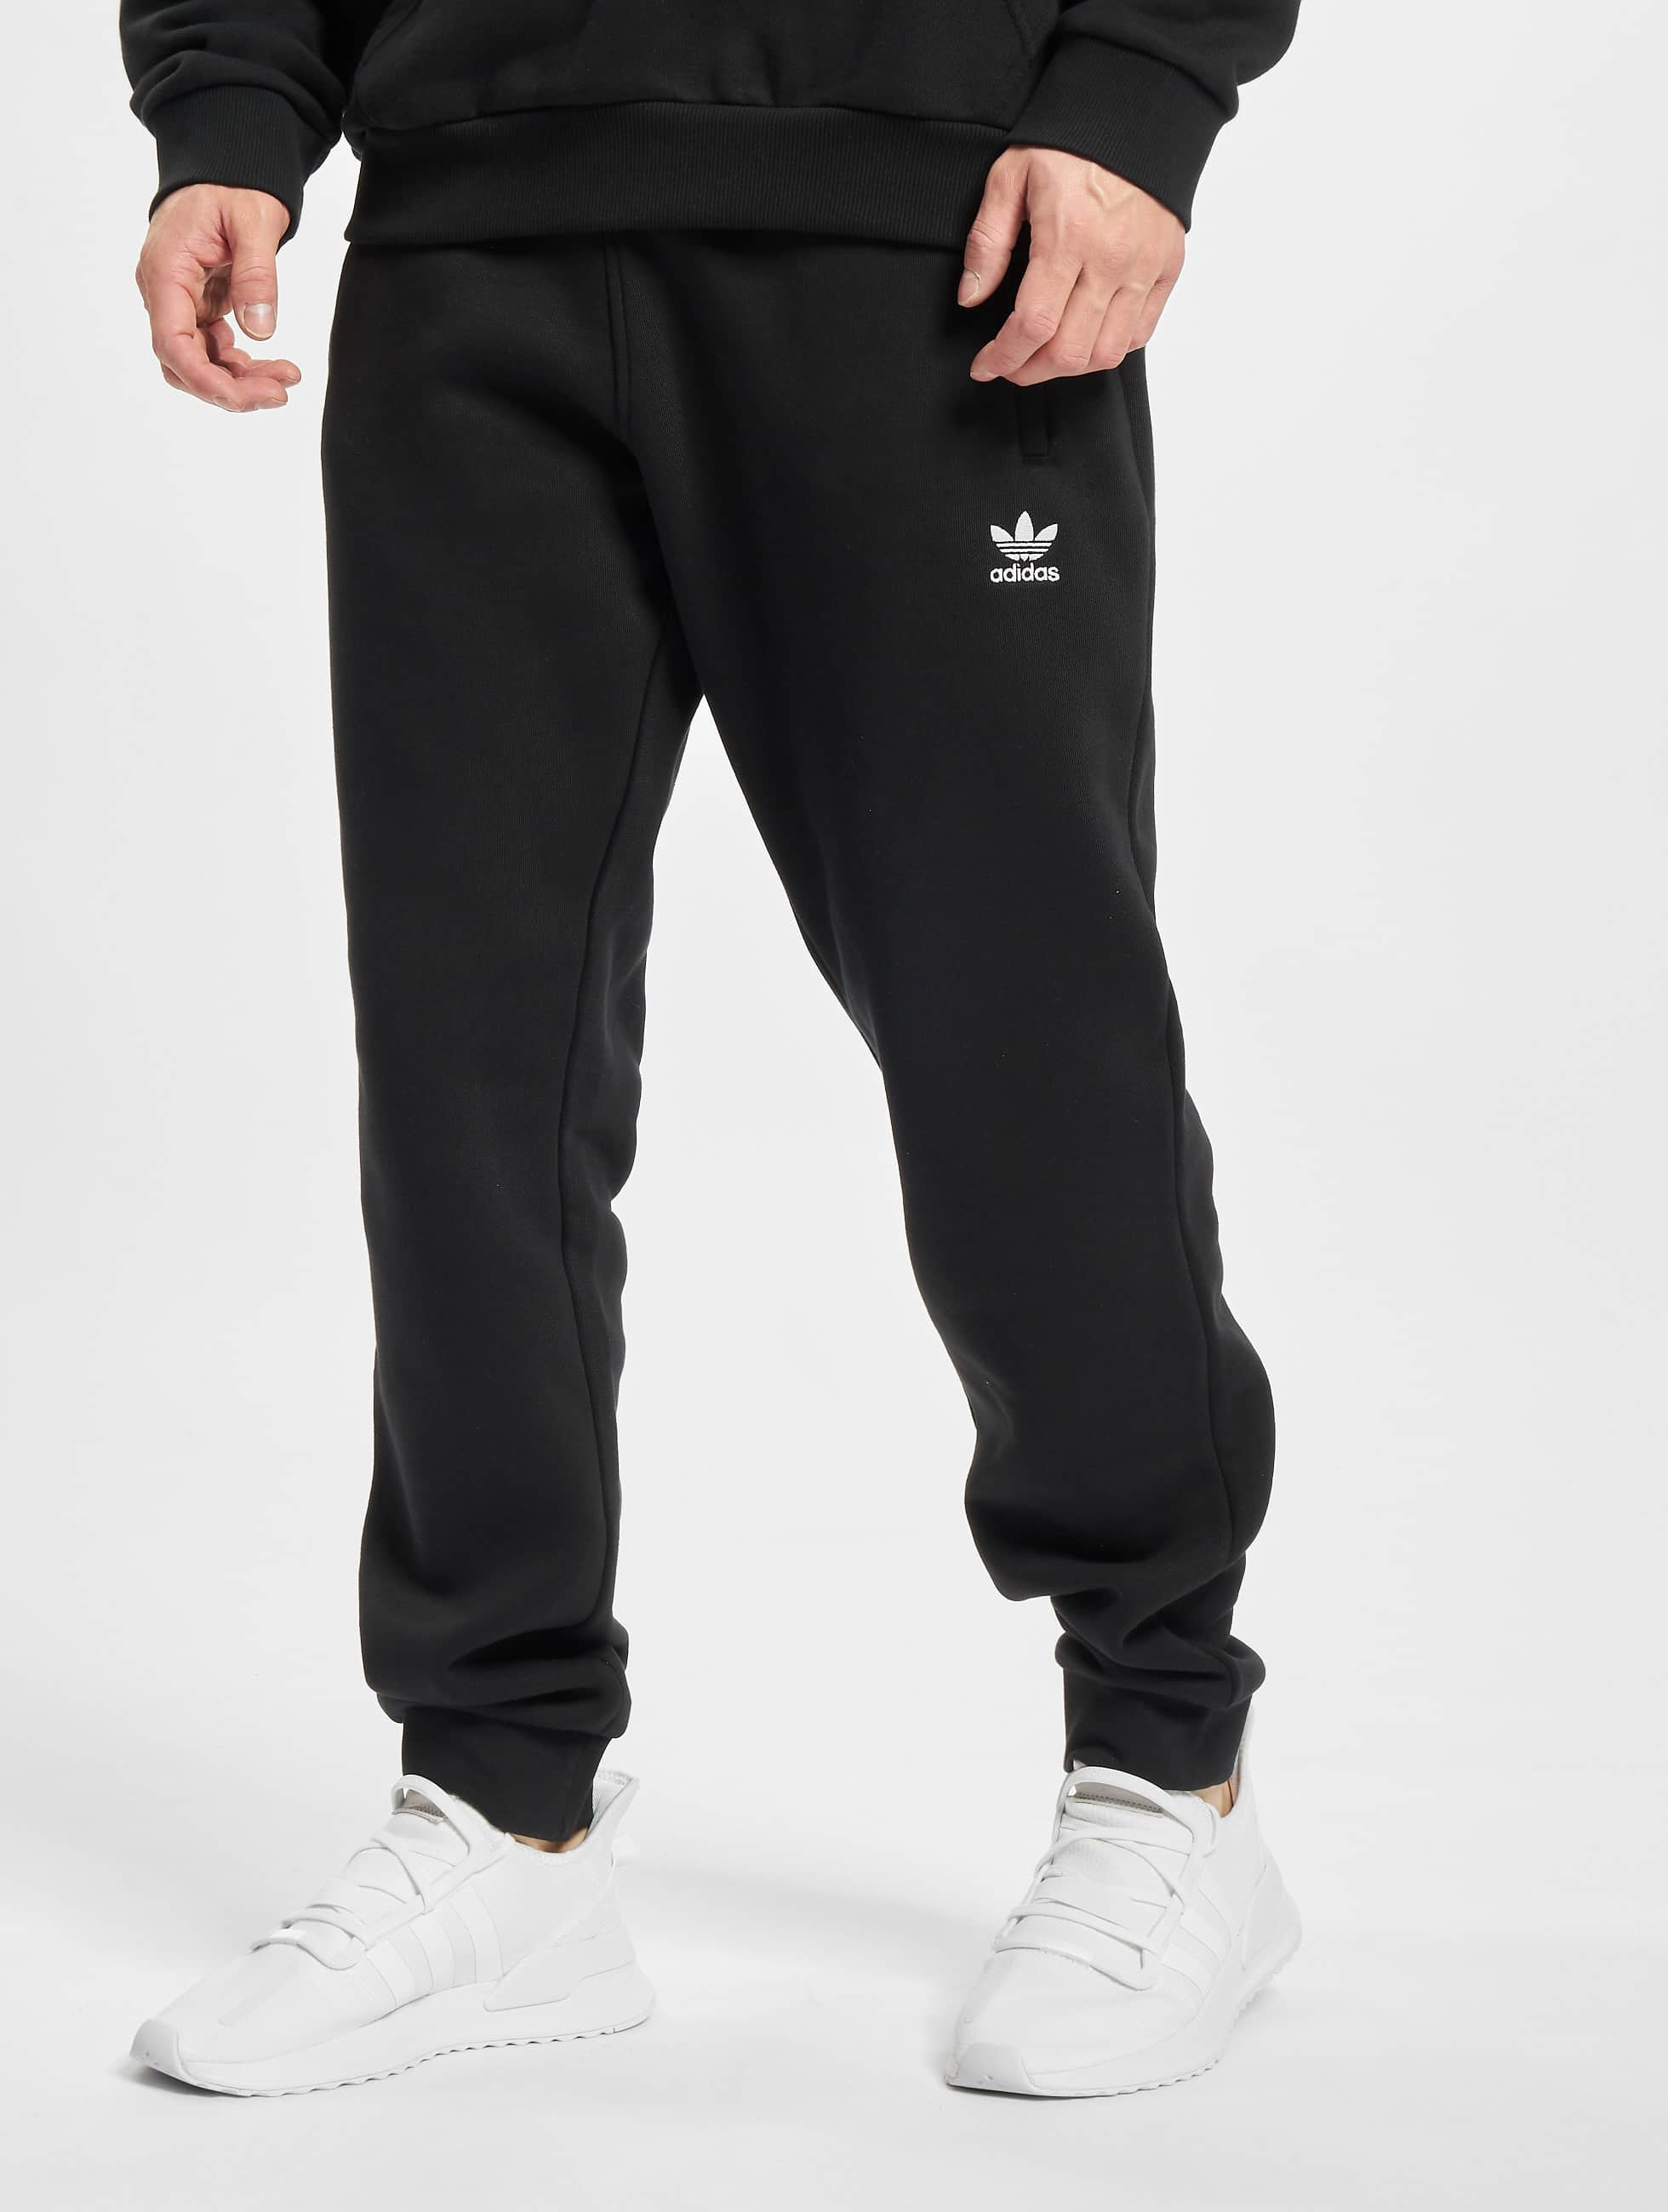 doe alstublieft niet Bereiken beha adidas Originals broek / joggingbroek Originals in zwart 835178